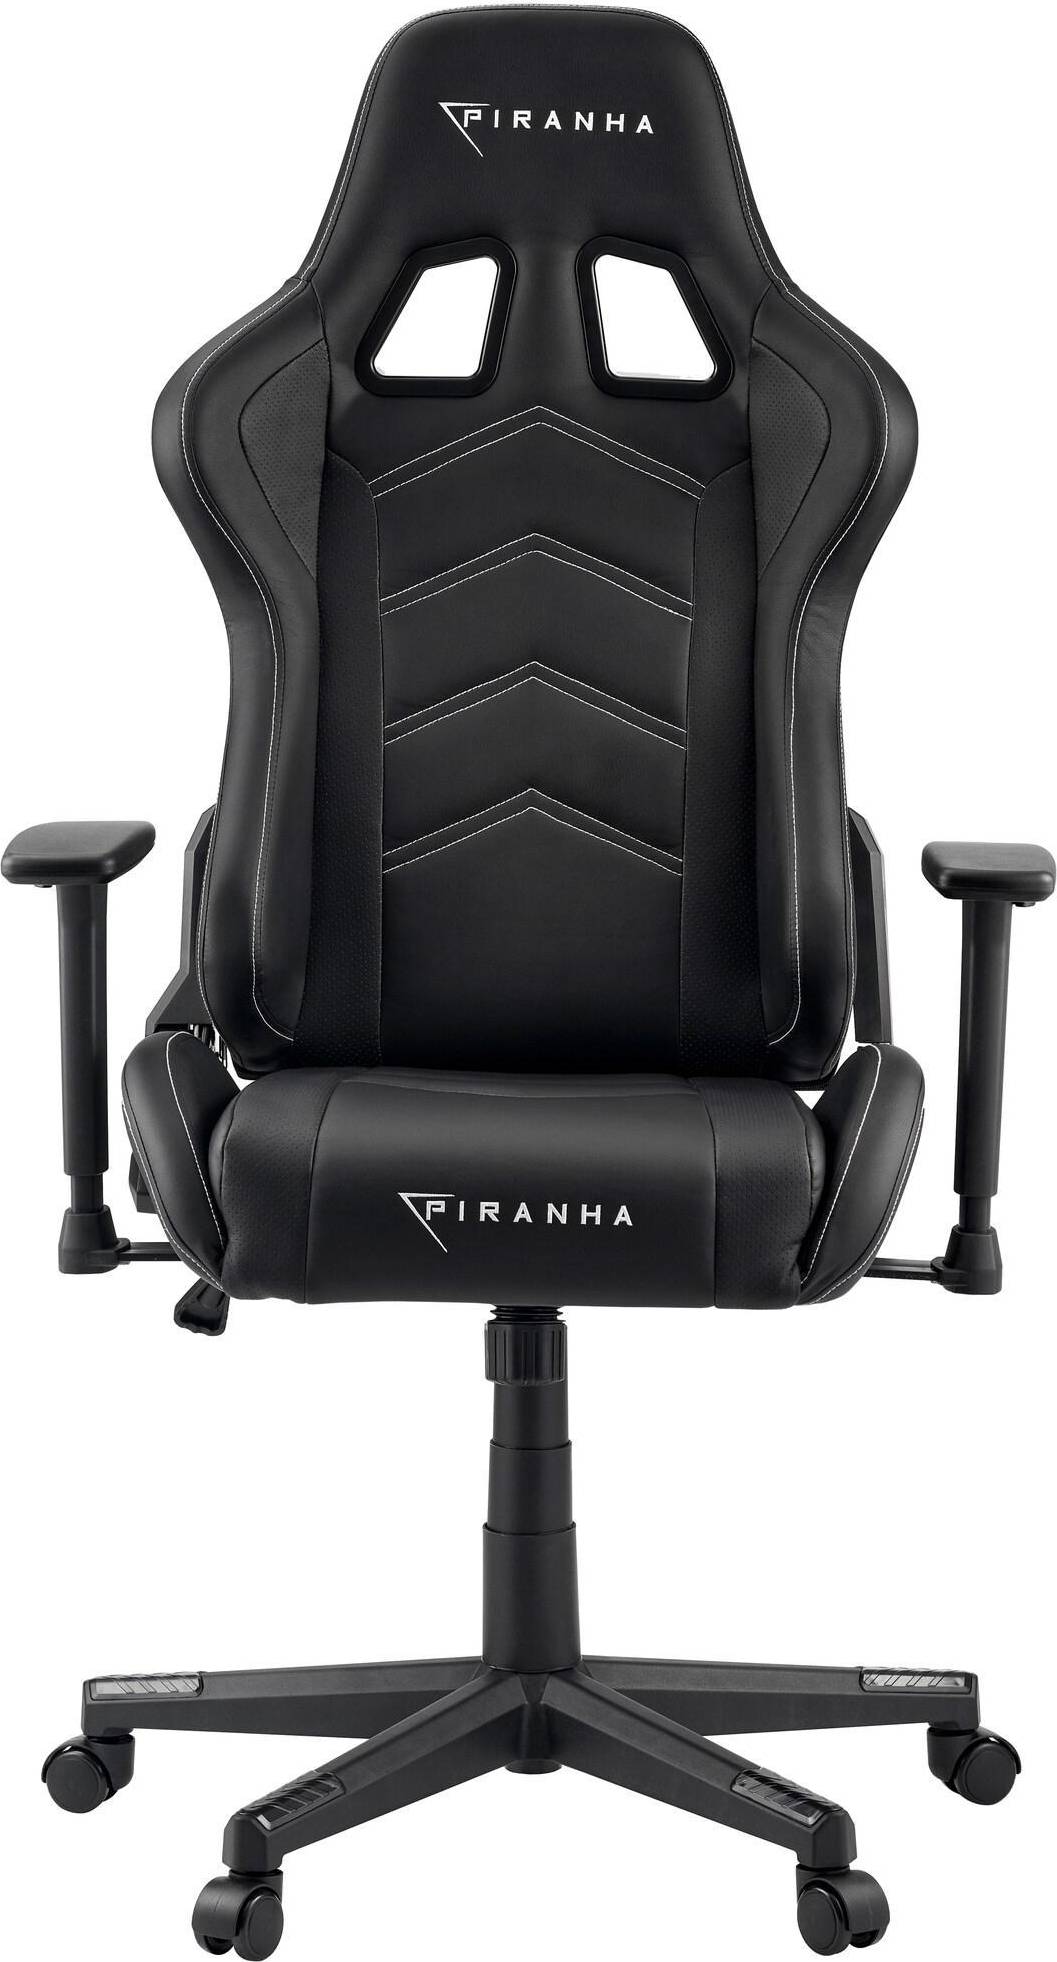  Bild på Piranha Attack V2 Gaming Chair - Black gamingstol